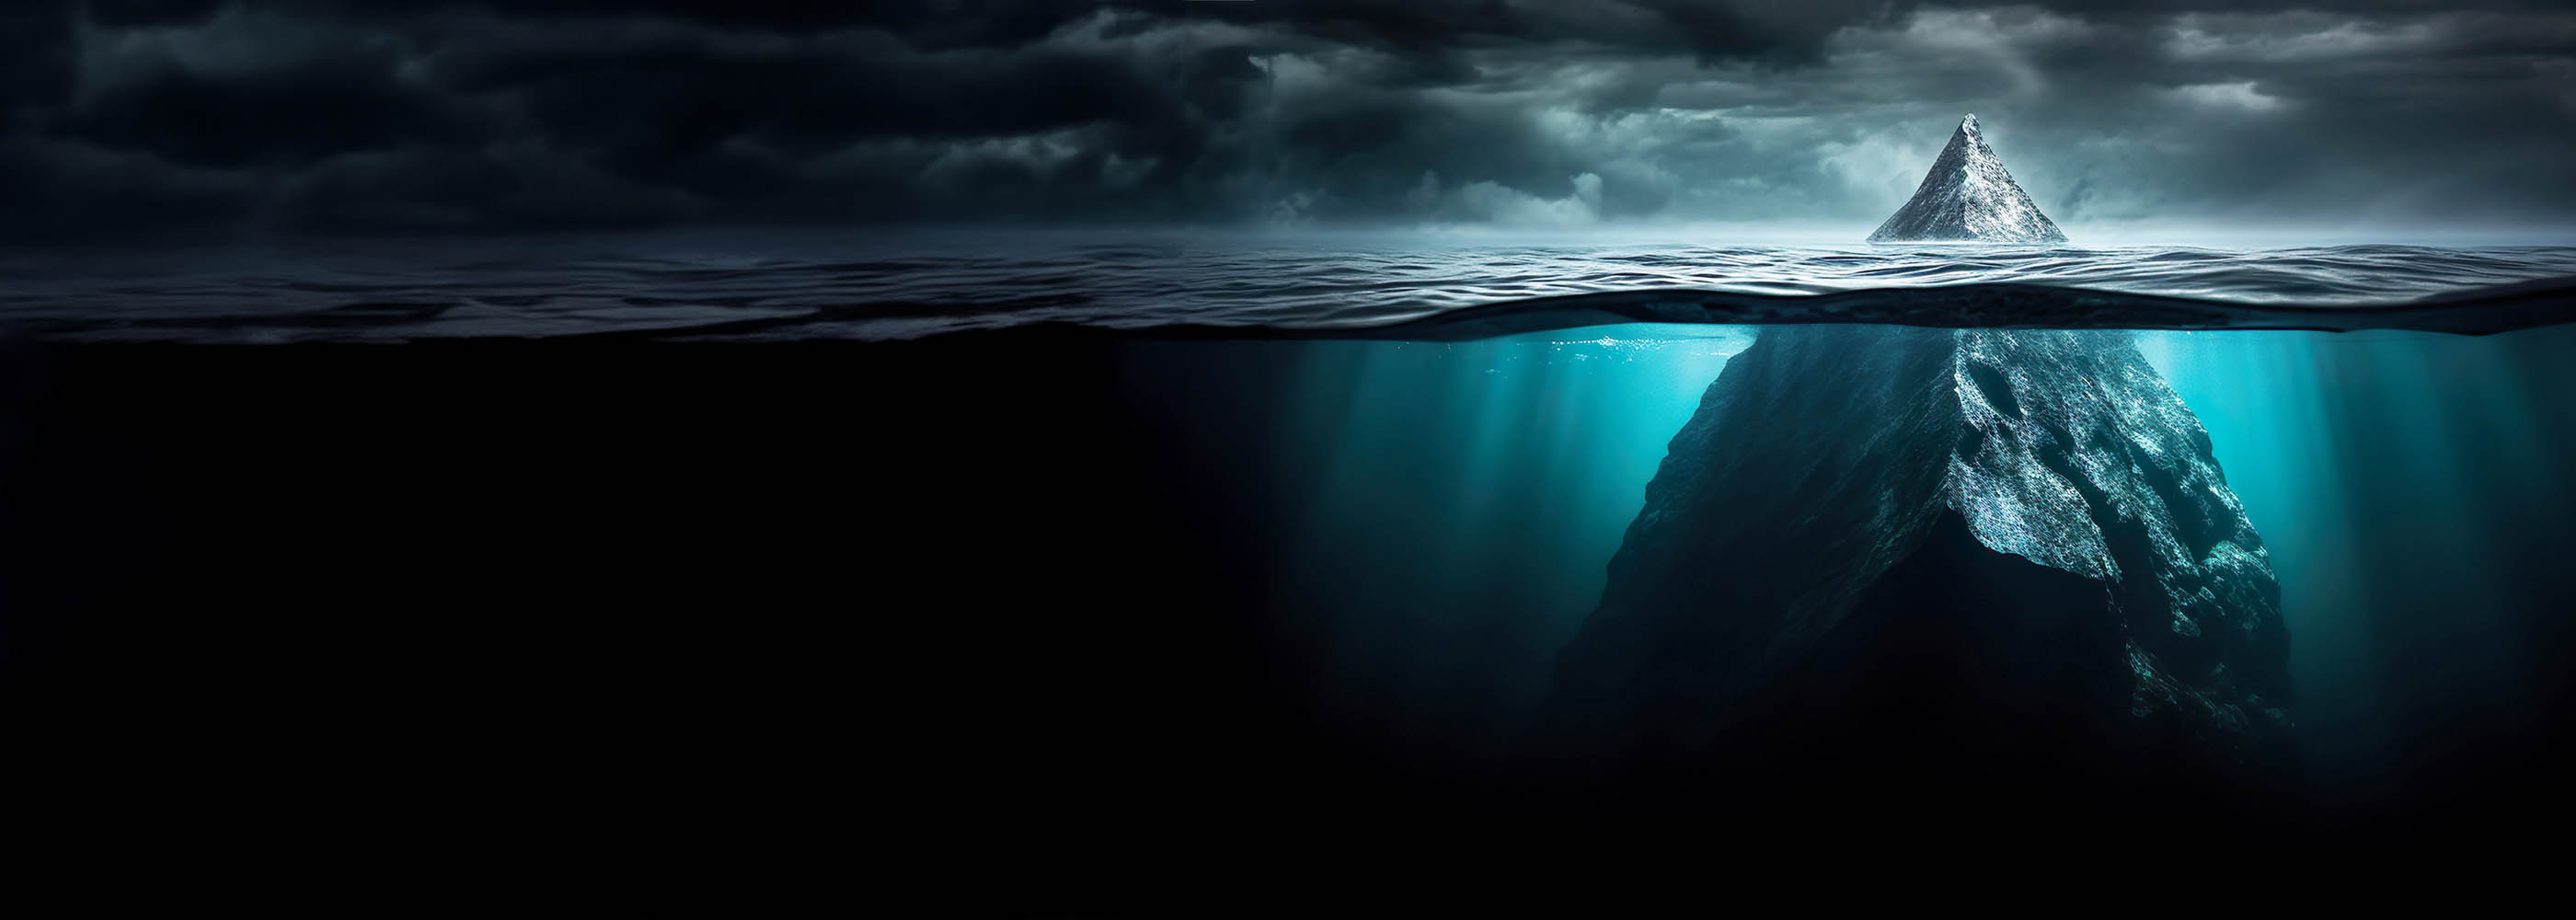 La pointe d'un iceberg émerge de l'eau.